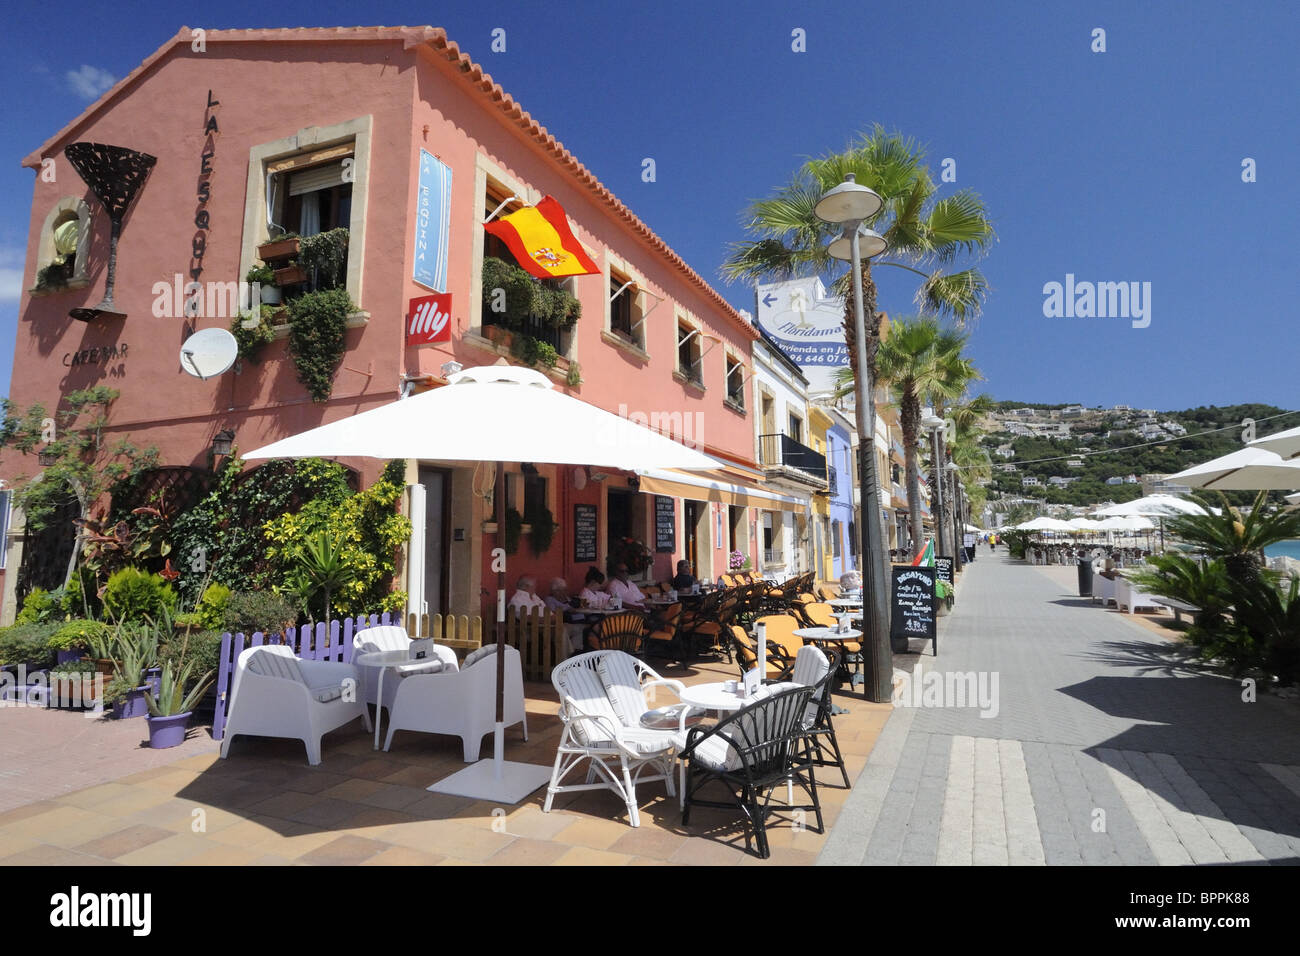 La Esquina Cafe on Marina Espanola, The Port, Javea, Spain Stock Photo